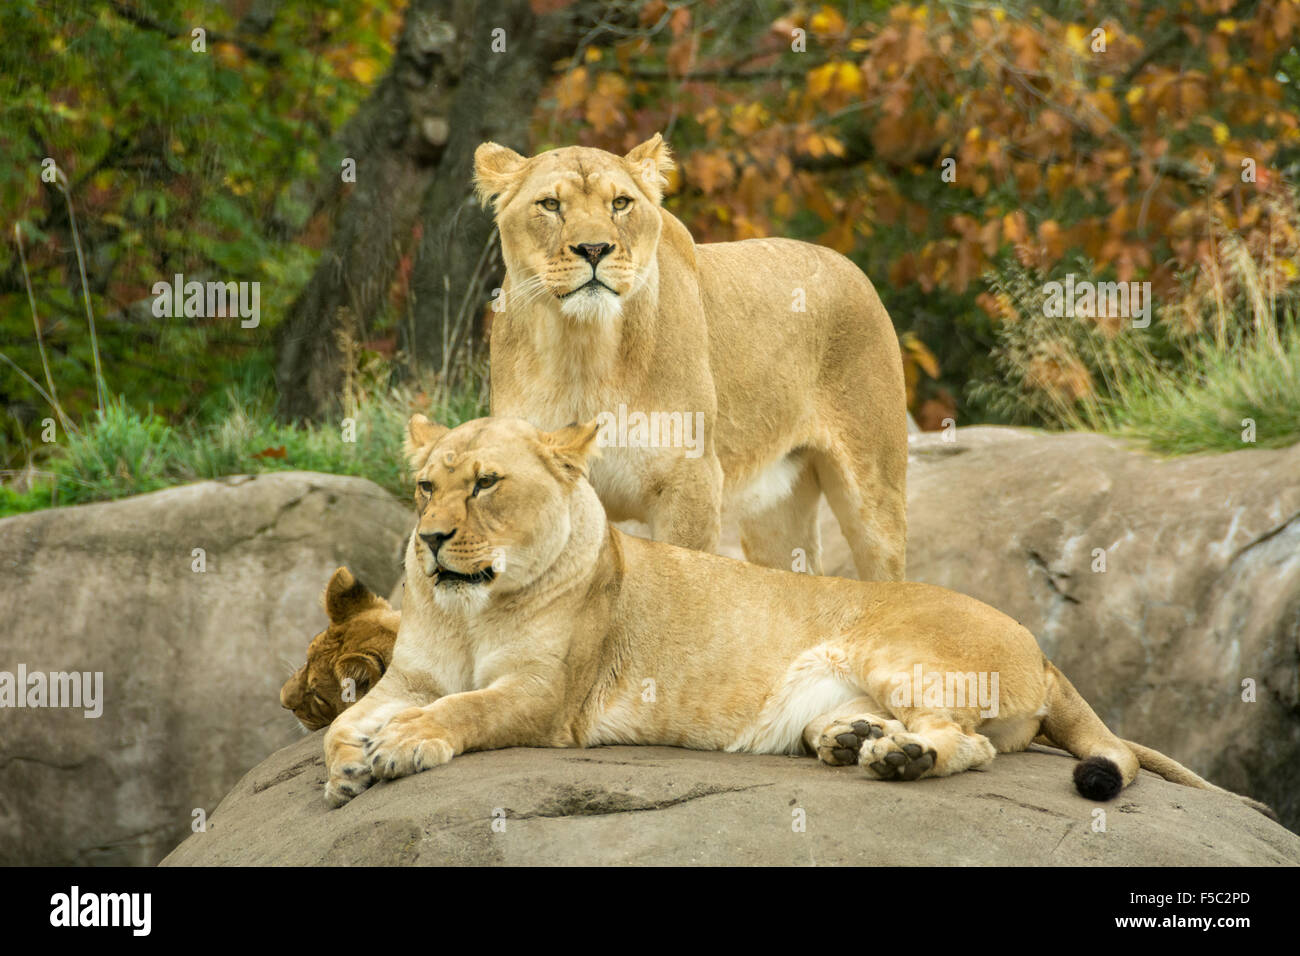 Lion exhibit at the Oregon Zoo, Portland, Oregon. Stock Photo